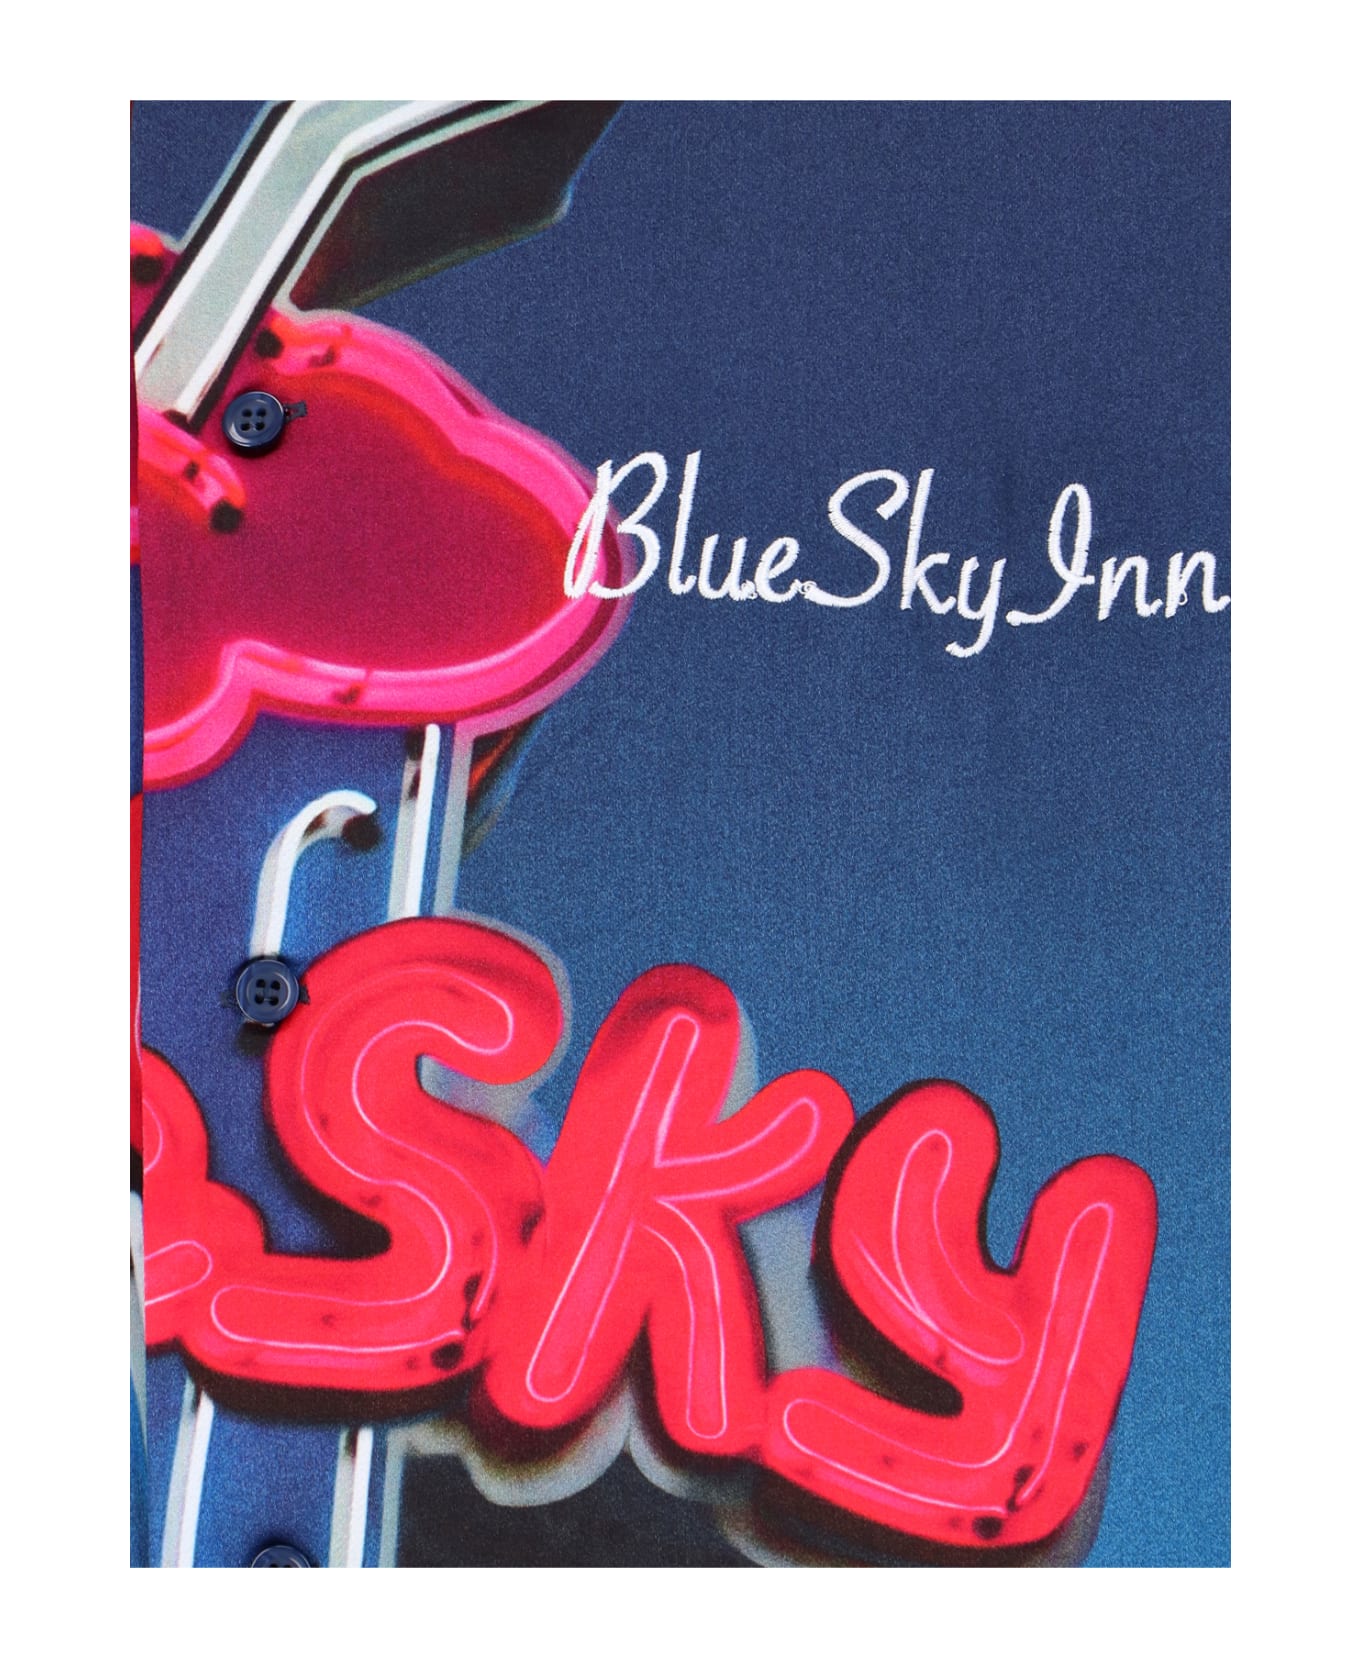 Blue Sky Inn Shirt - Blue